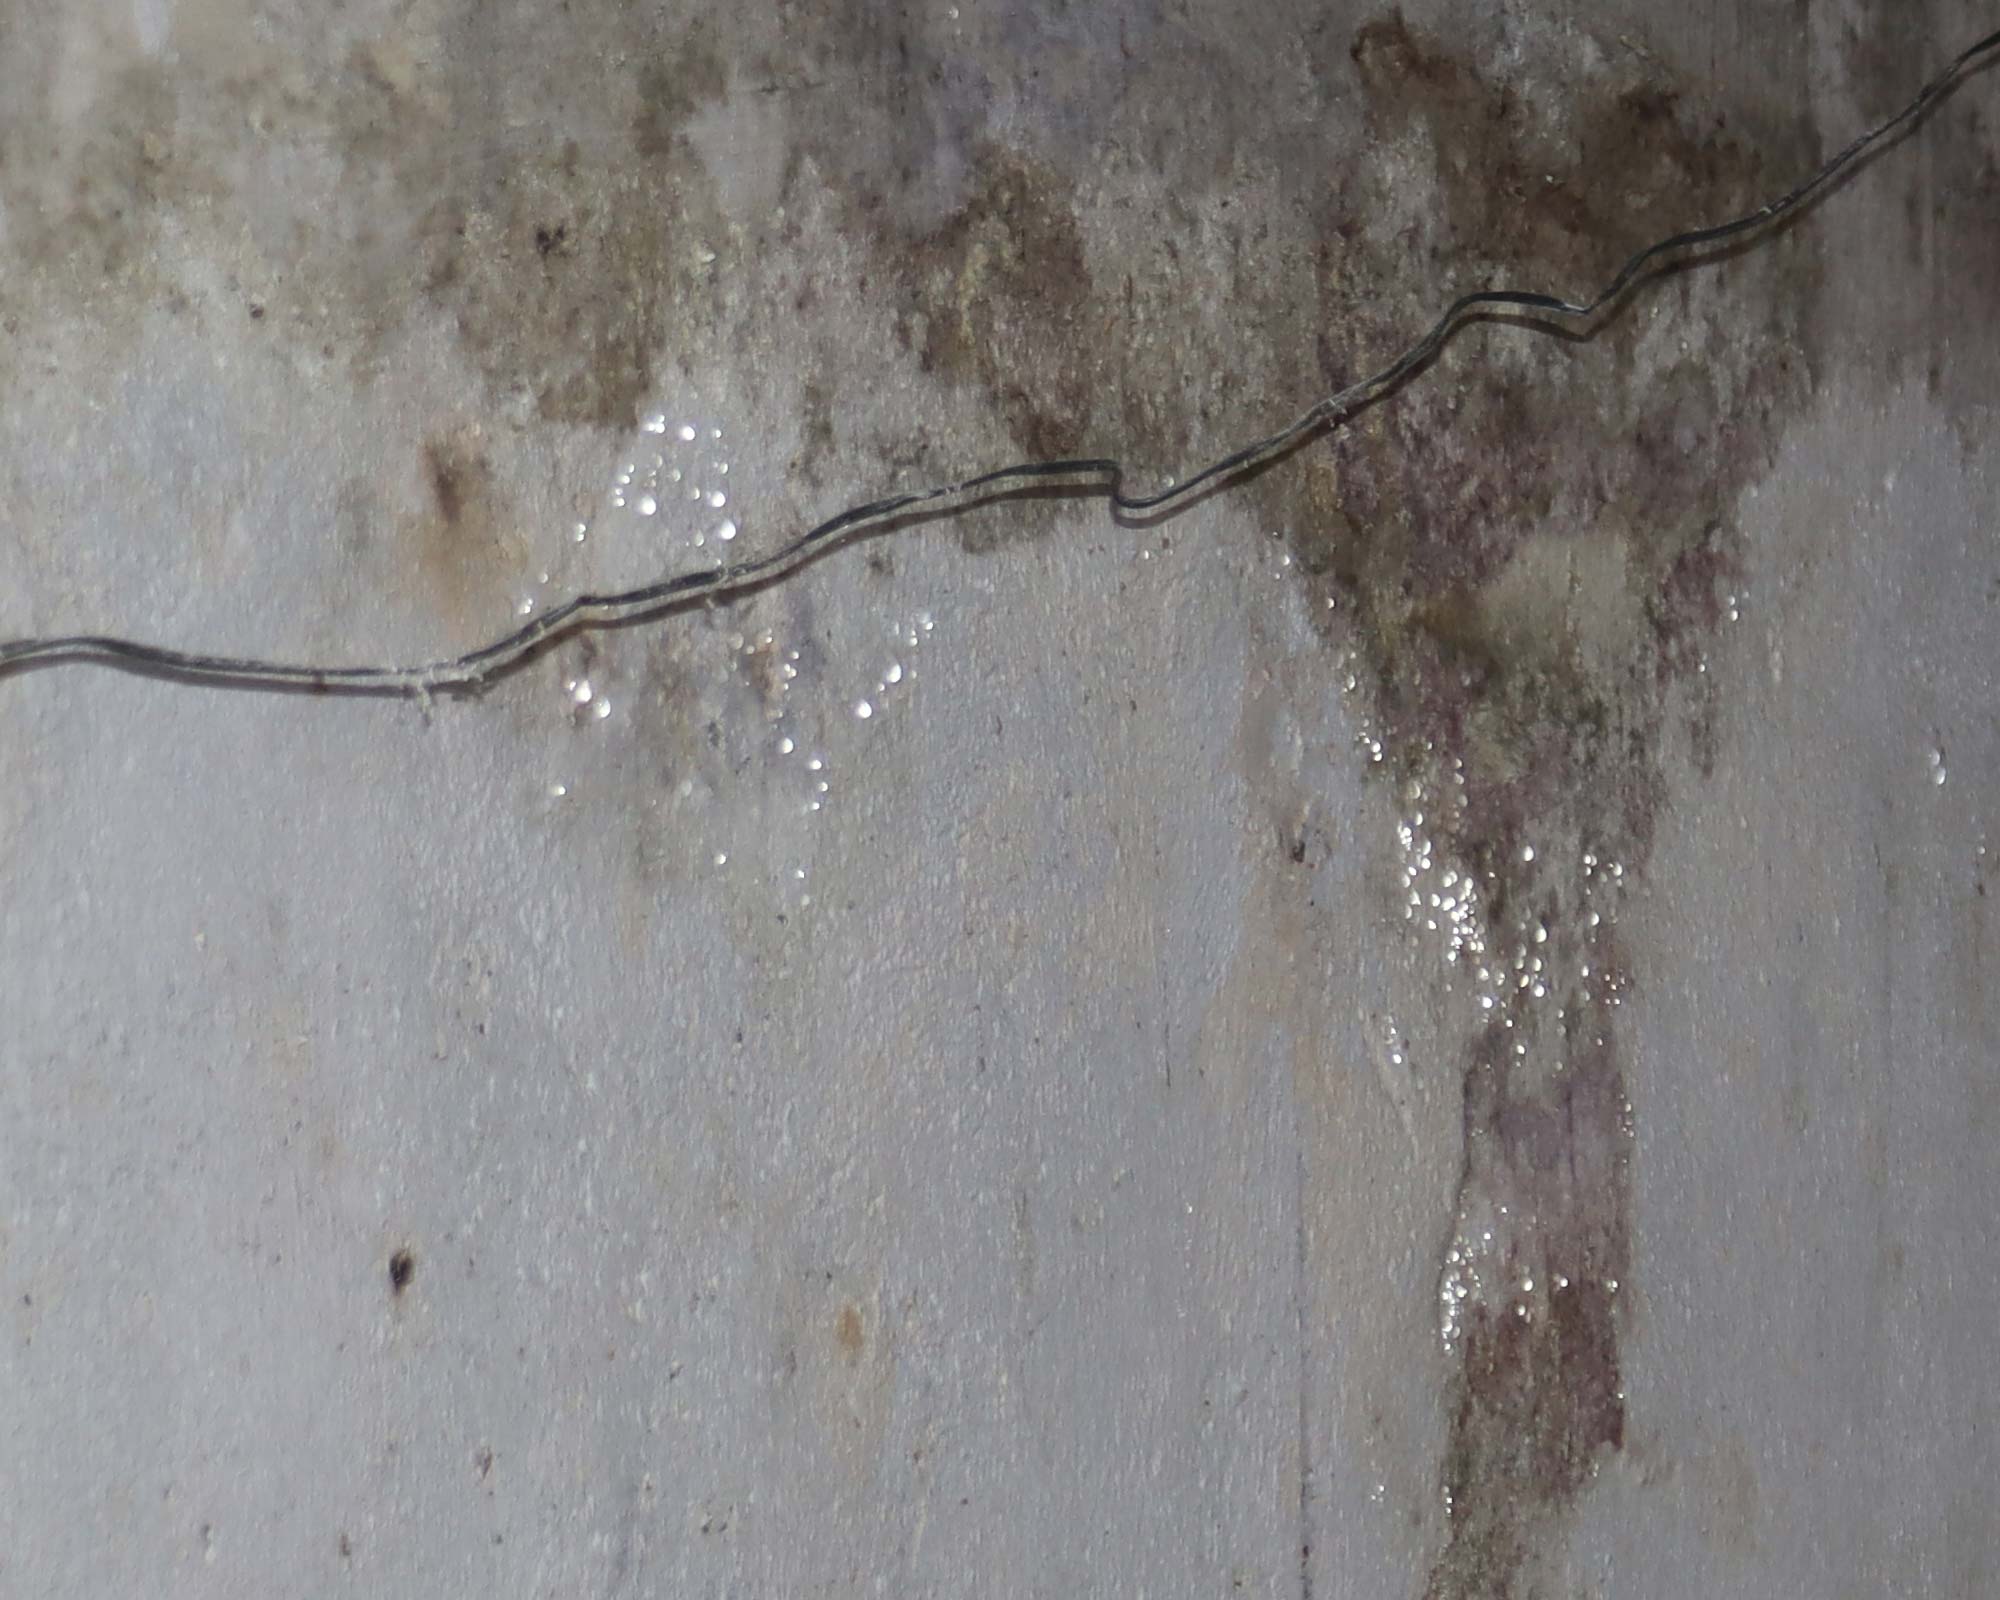 Oberflächenfeuchtigkeit auf der Wand durch Kodensation